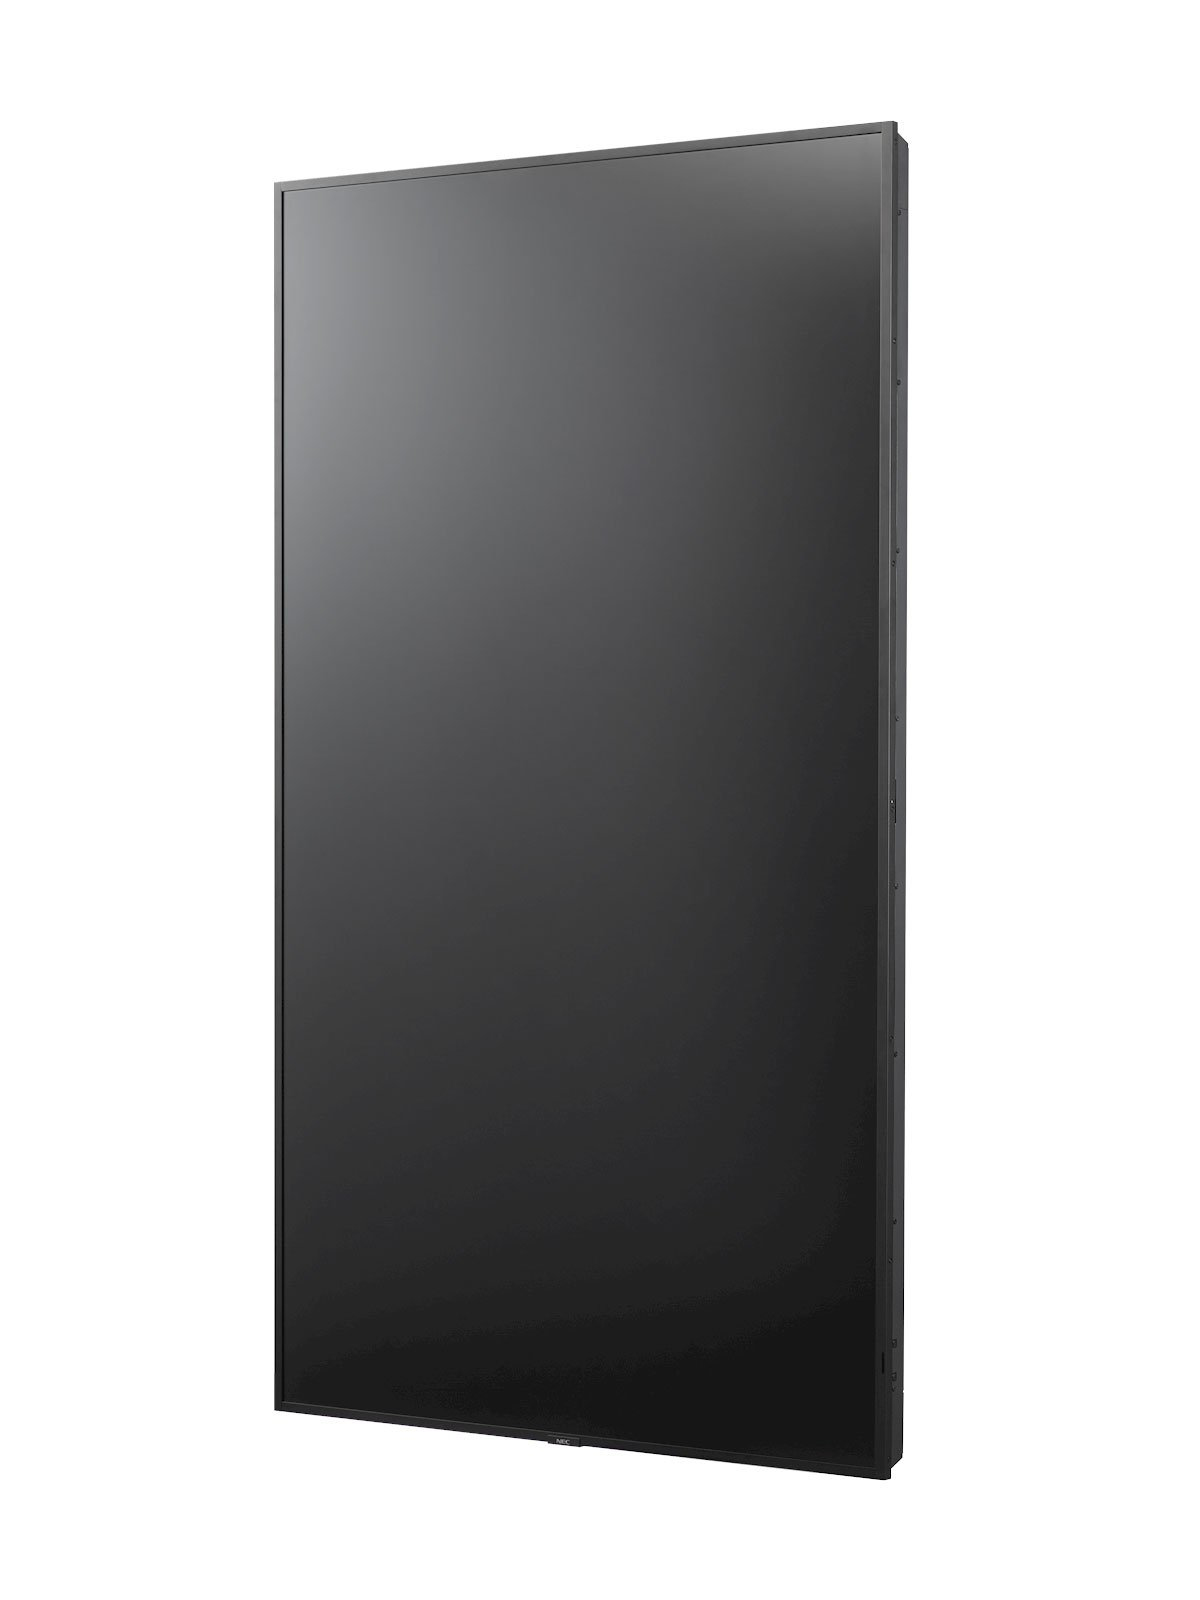 NEC Display MultiSync E758 - 190 cm (75") Diagonalklasse (189.3 cm (74.5")